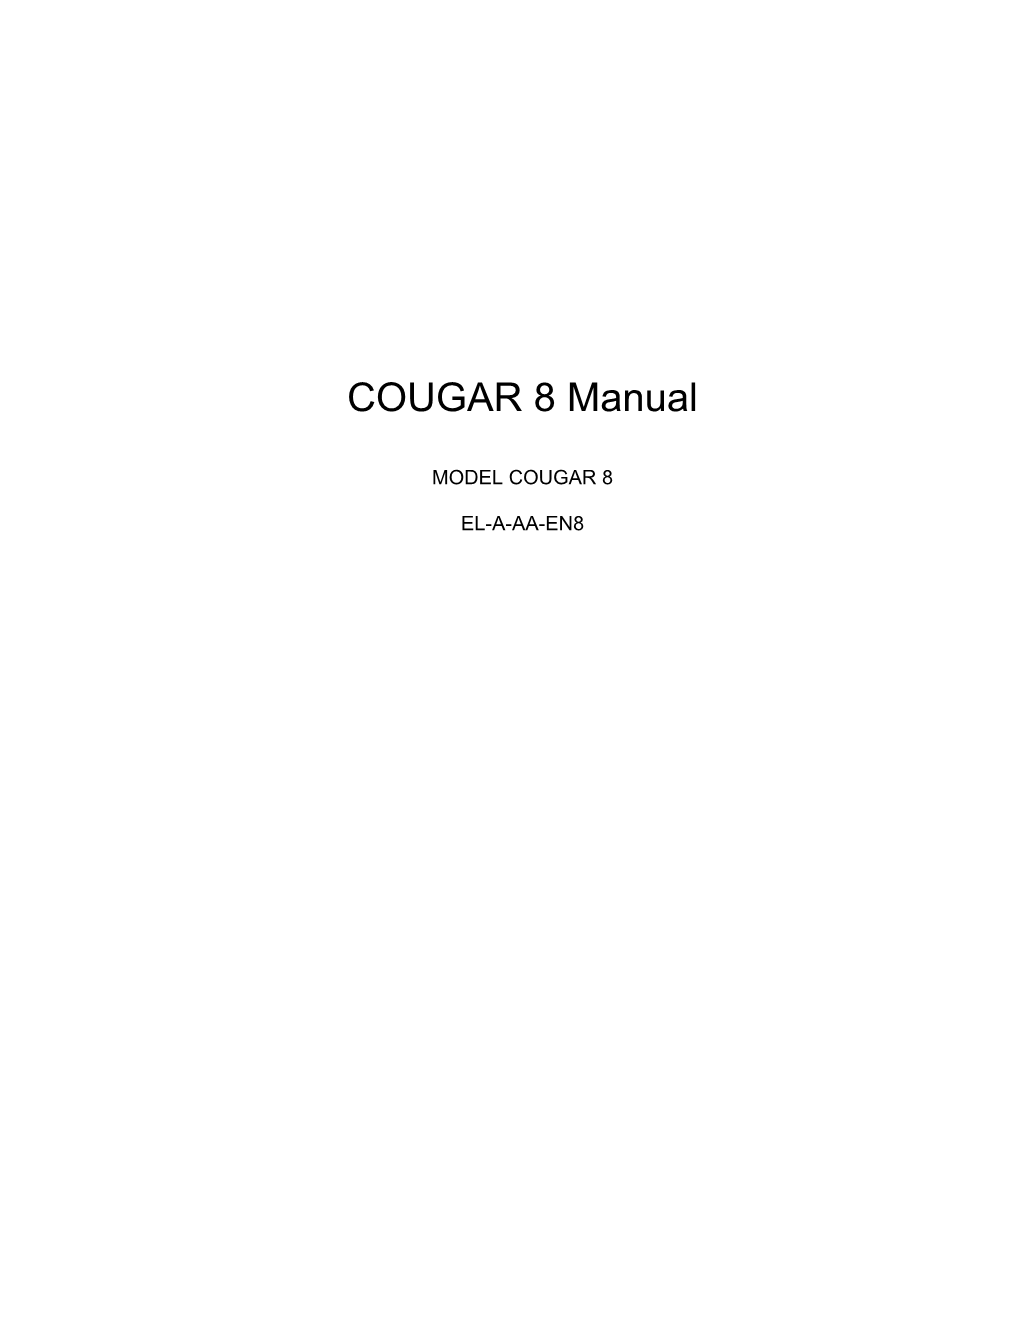 COUGAR 8 User Manual